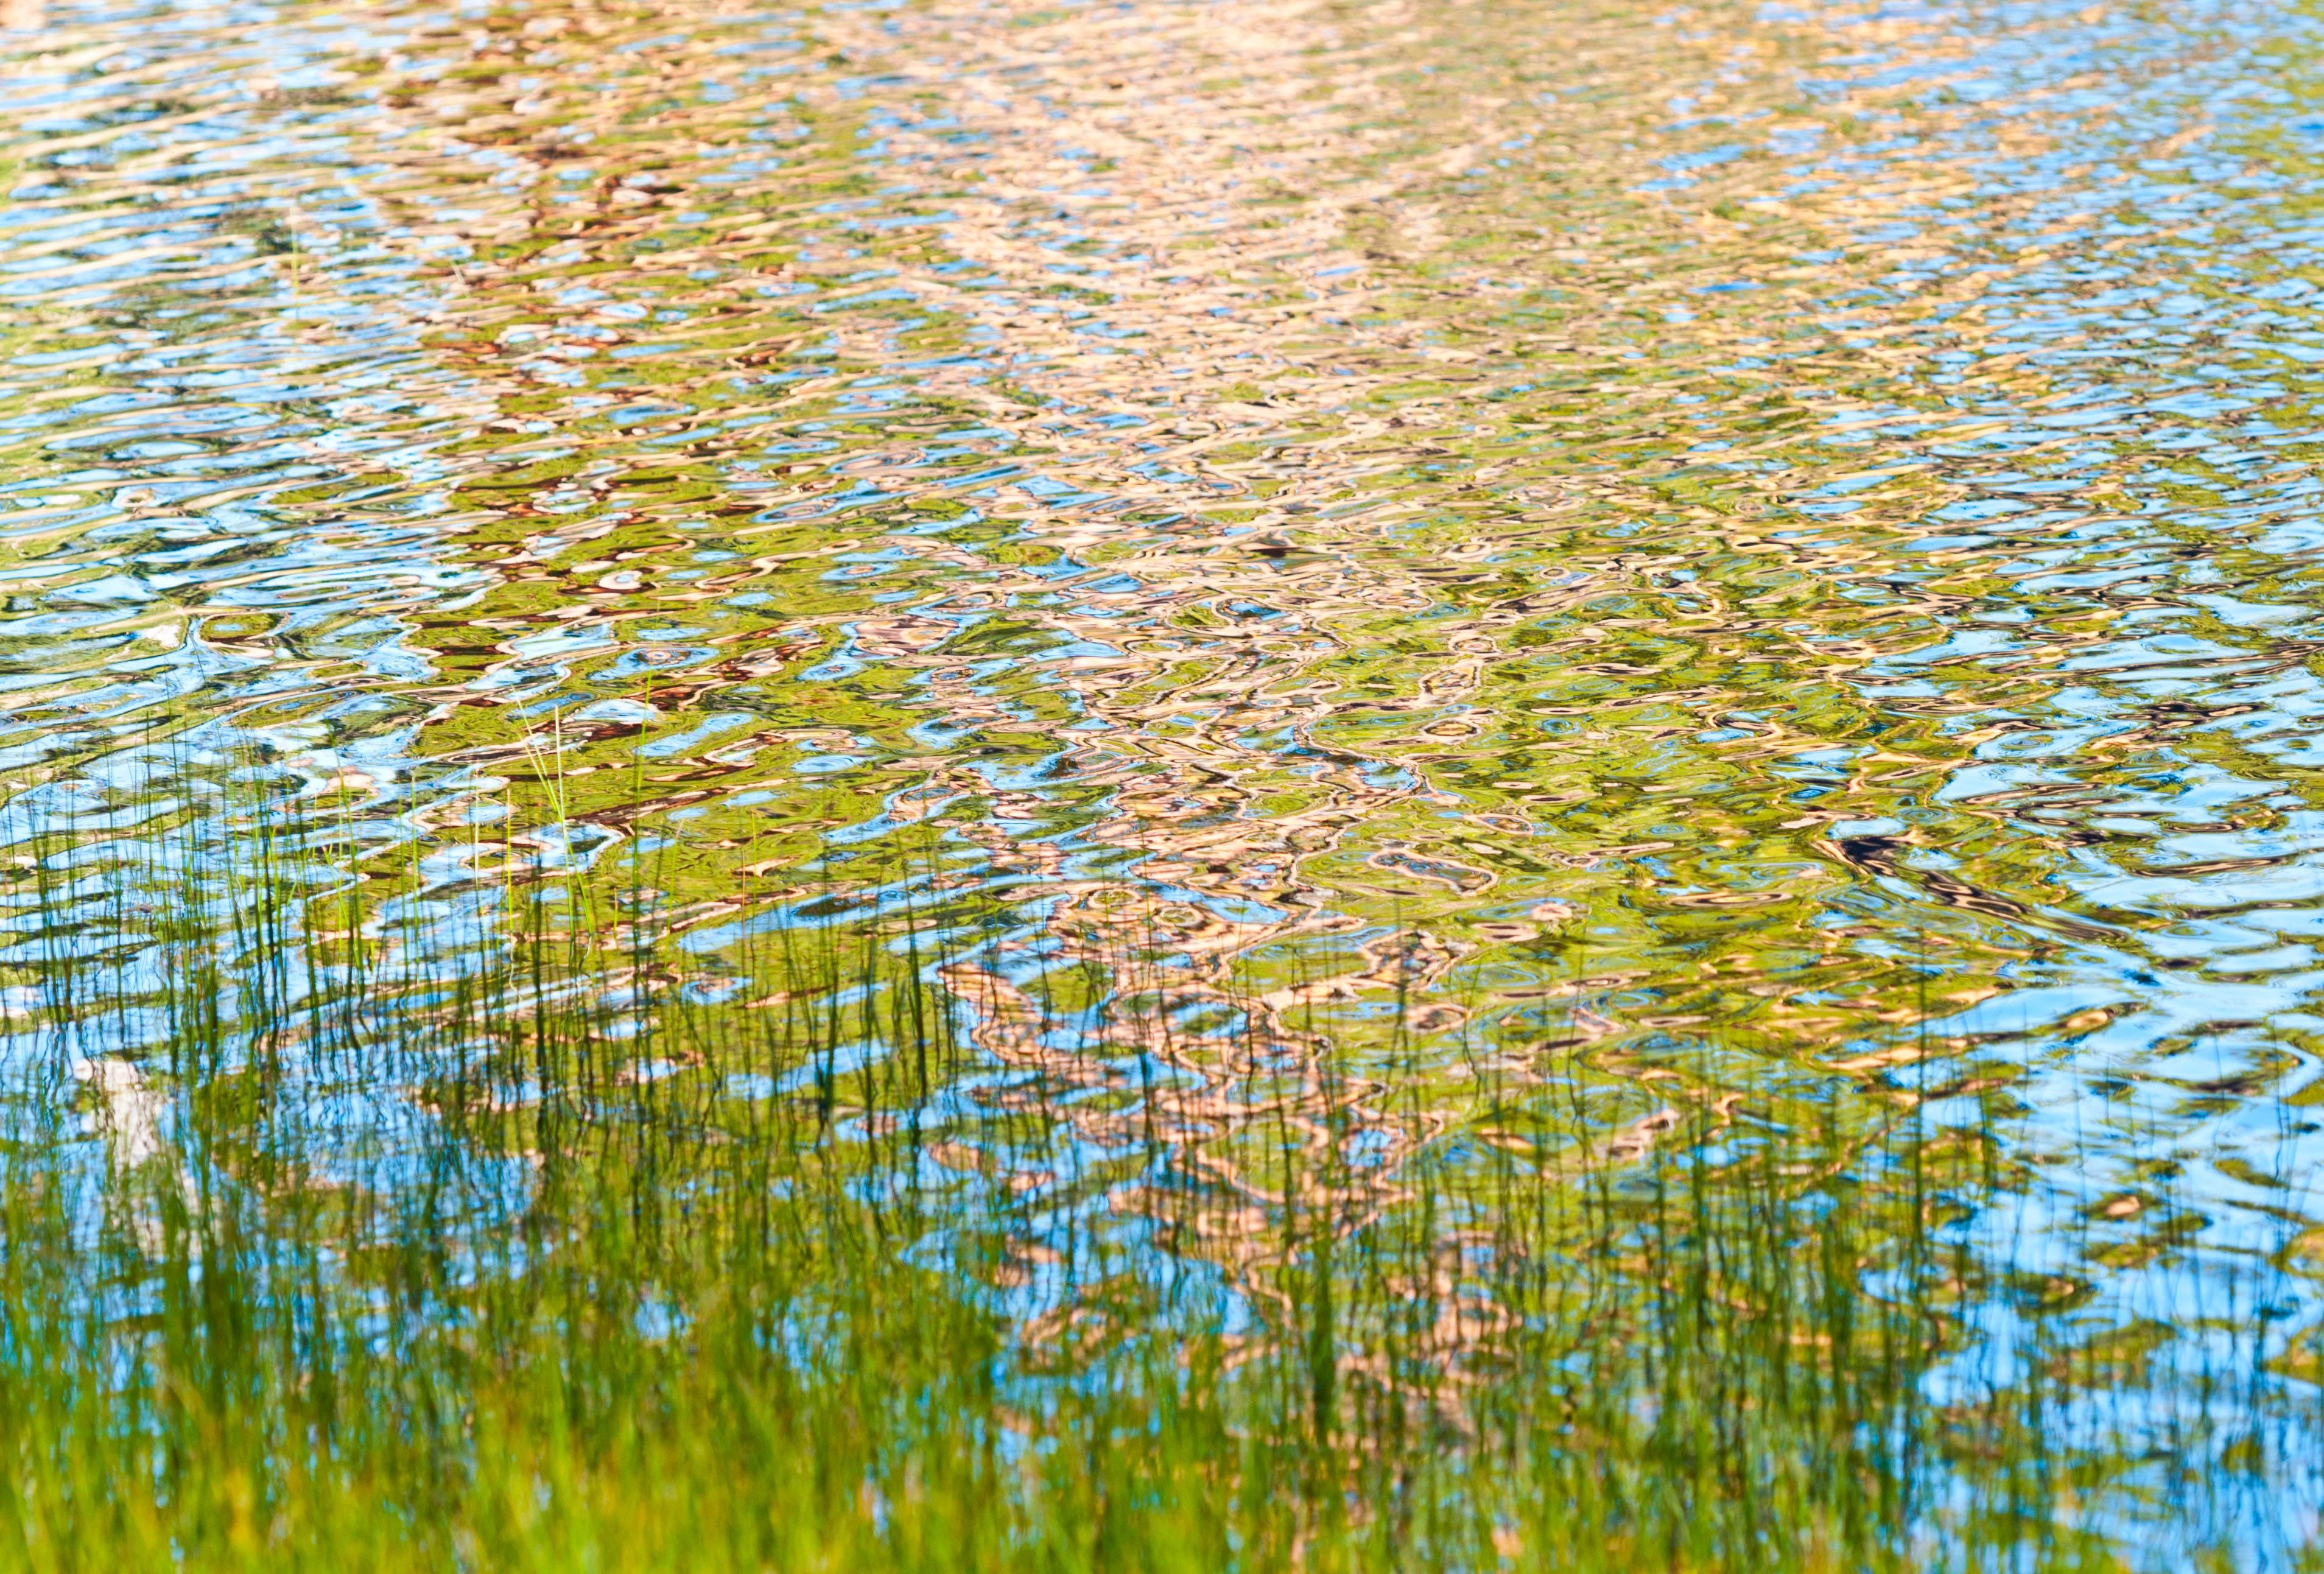 Gaétan Caron Landscape Photograph - "Bathing" (Framed) Water Reflection Photograph, Lassen Volcanic National Park